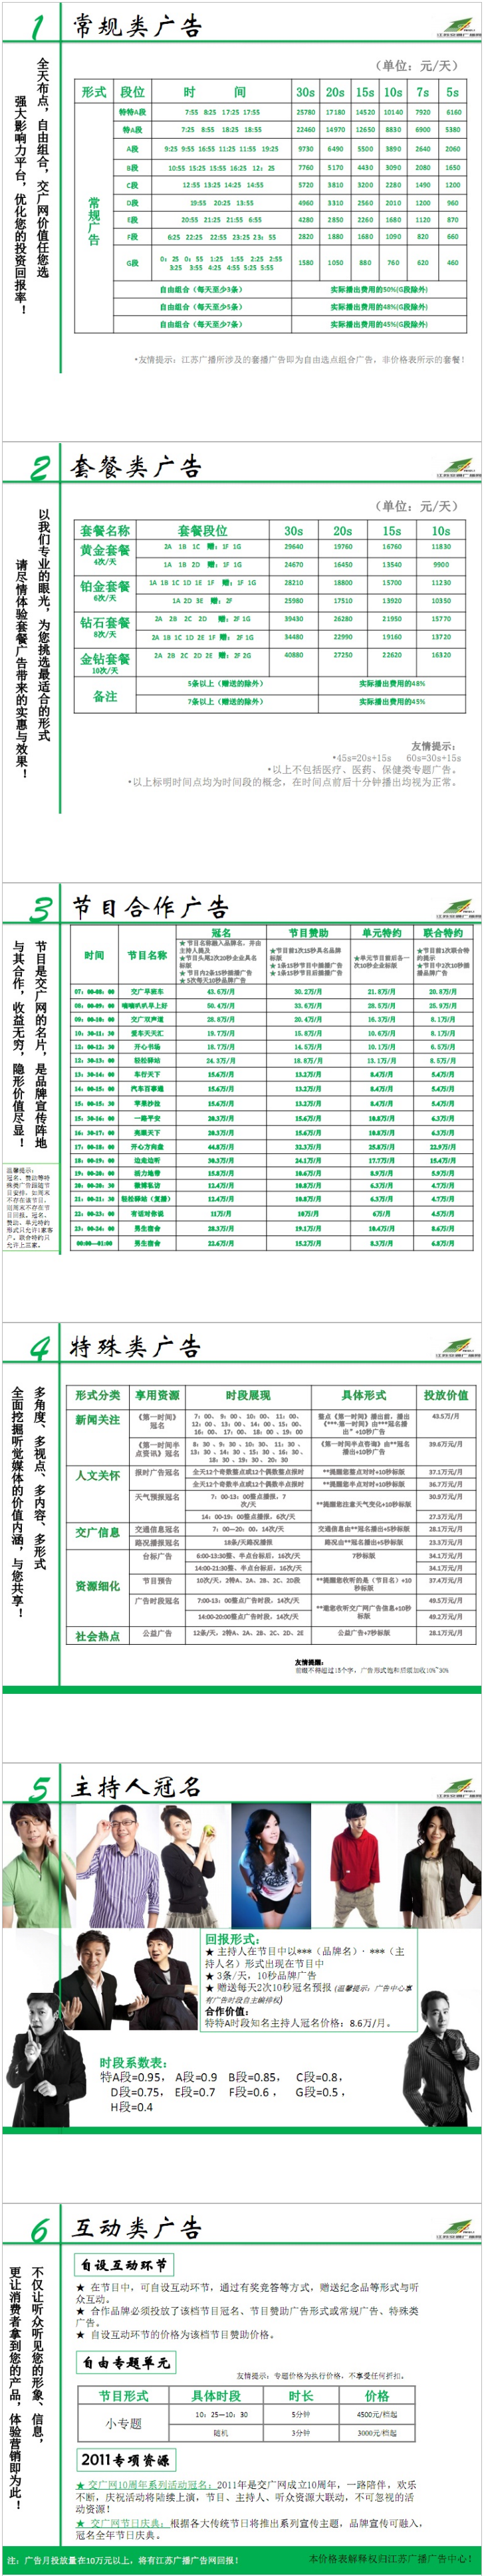 2011江苏人民广播电台交通台 FM101.1广告报价表.png